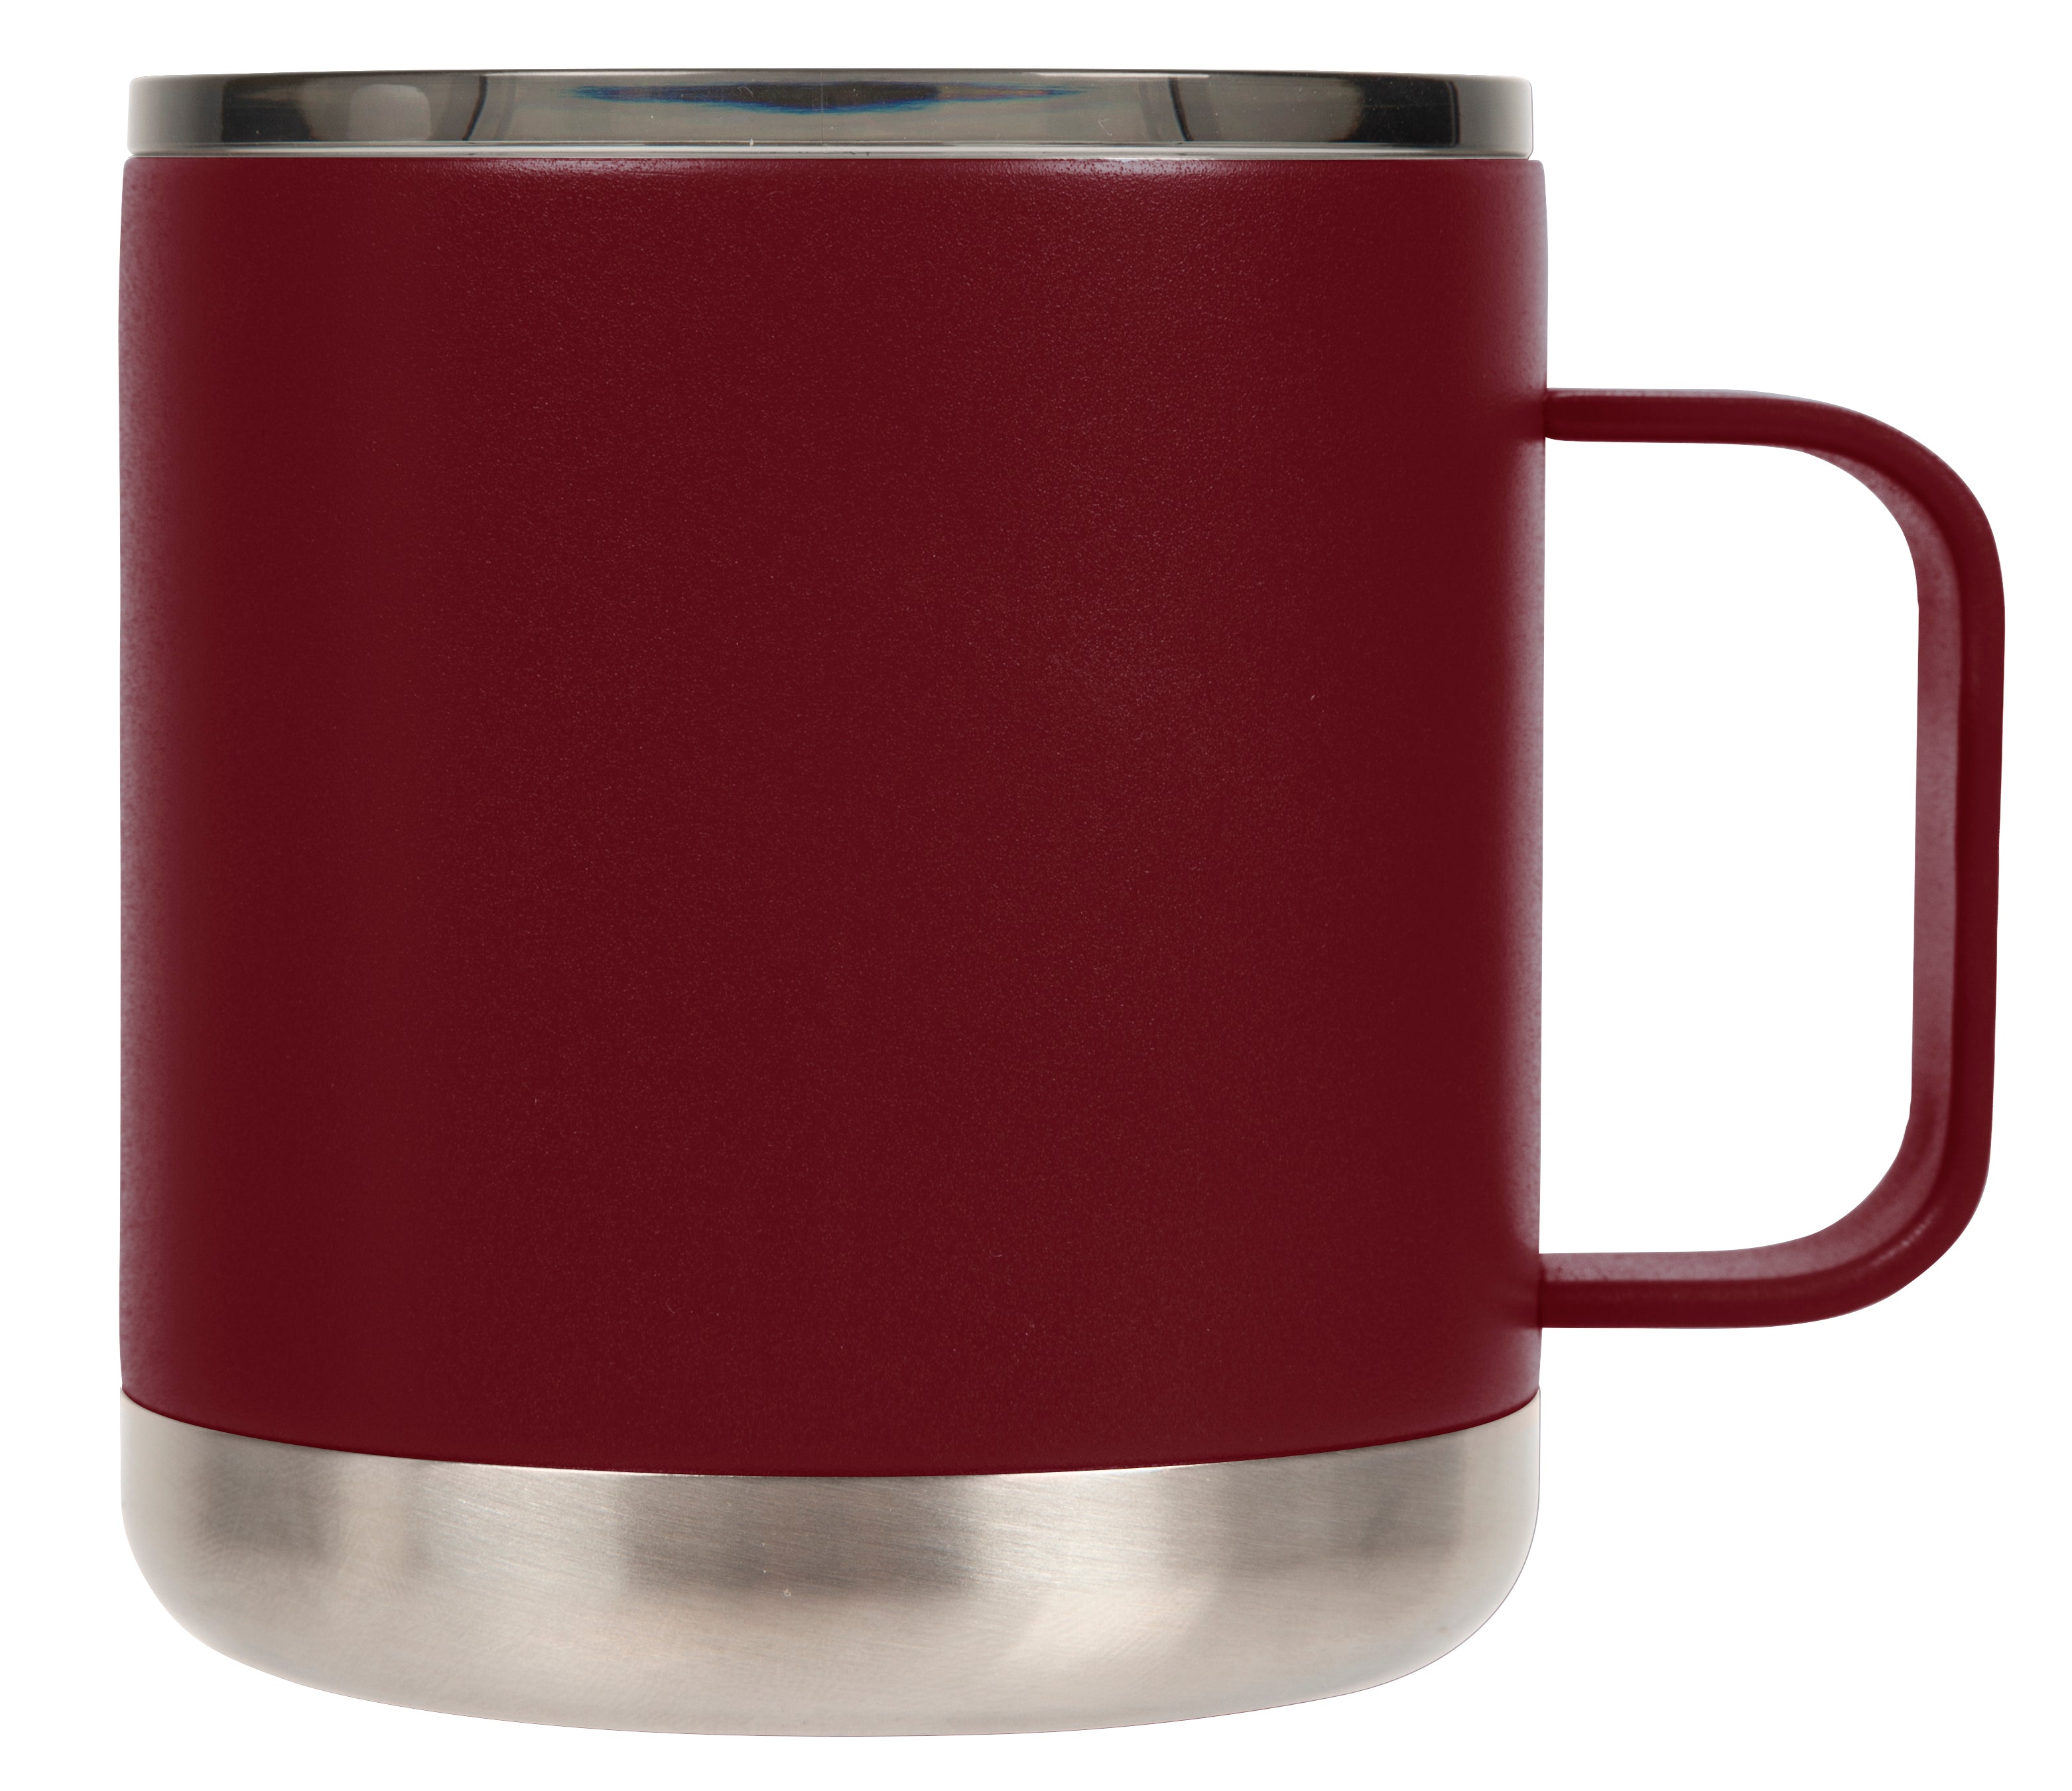 24oz Coffee Travel Mug With Sliding Lid - Powder Coated Wine Red –  SunwillBiz